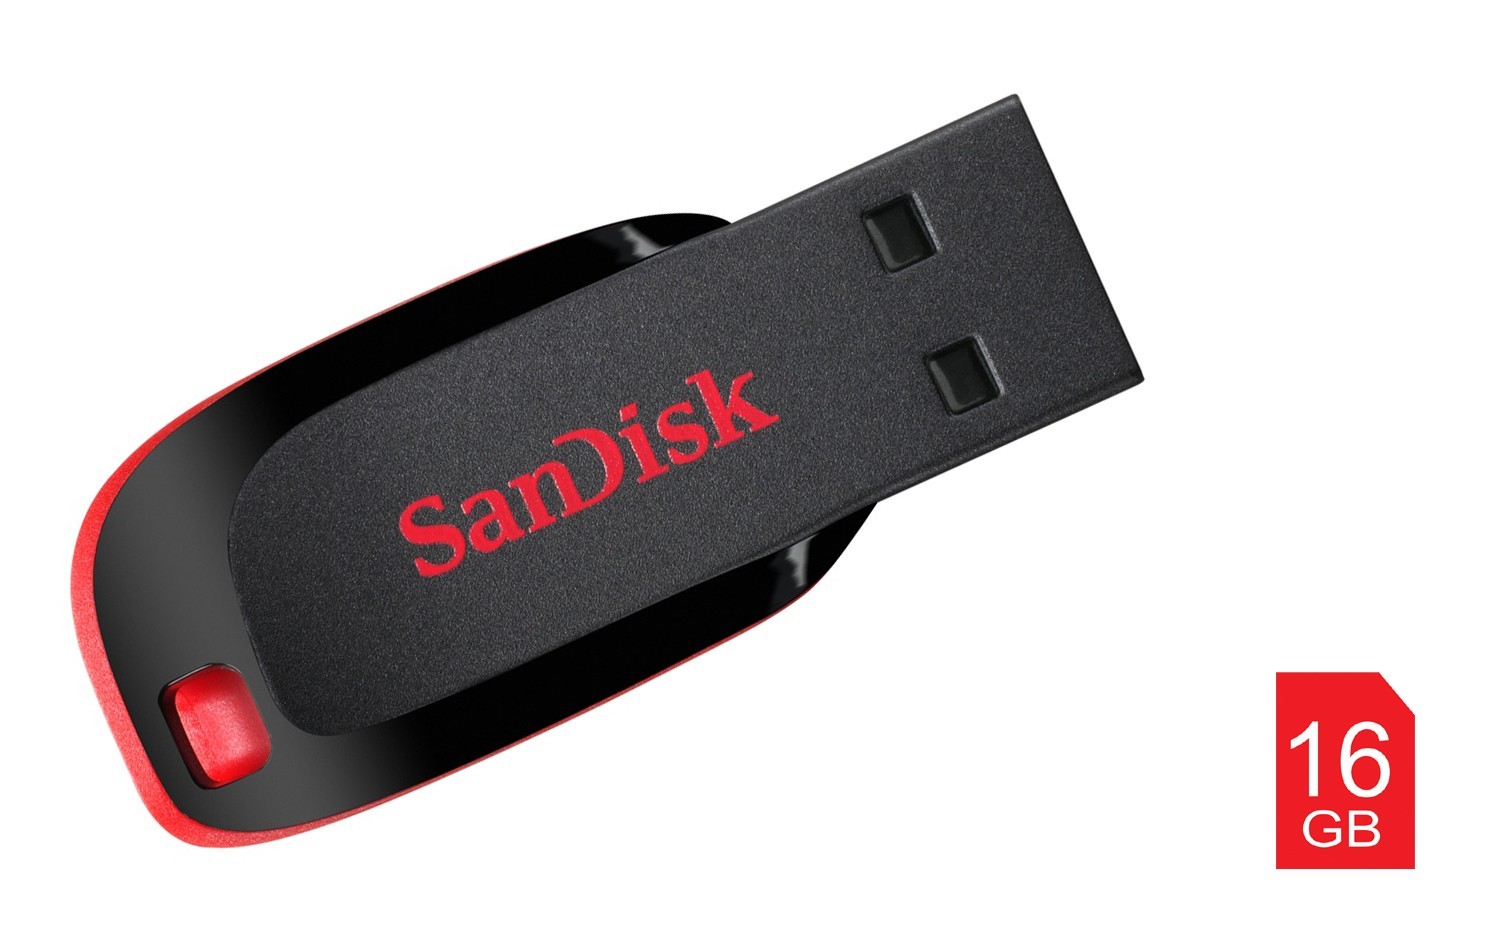 Stick memorie Sandisk Cruzer Blade 16GB cartuseria.ro poza 2021